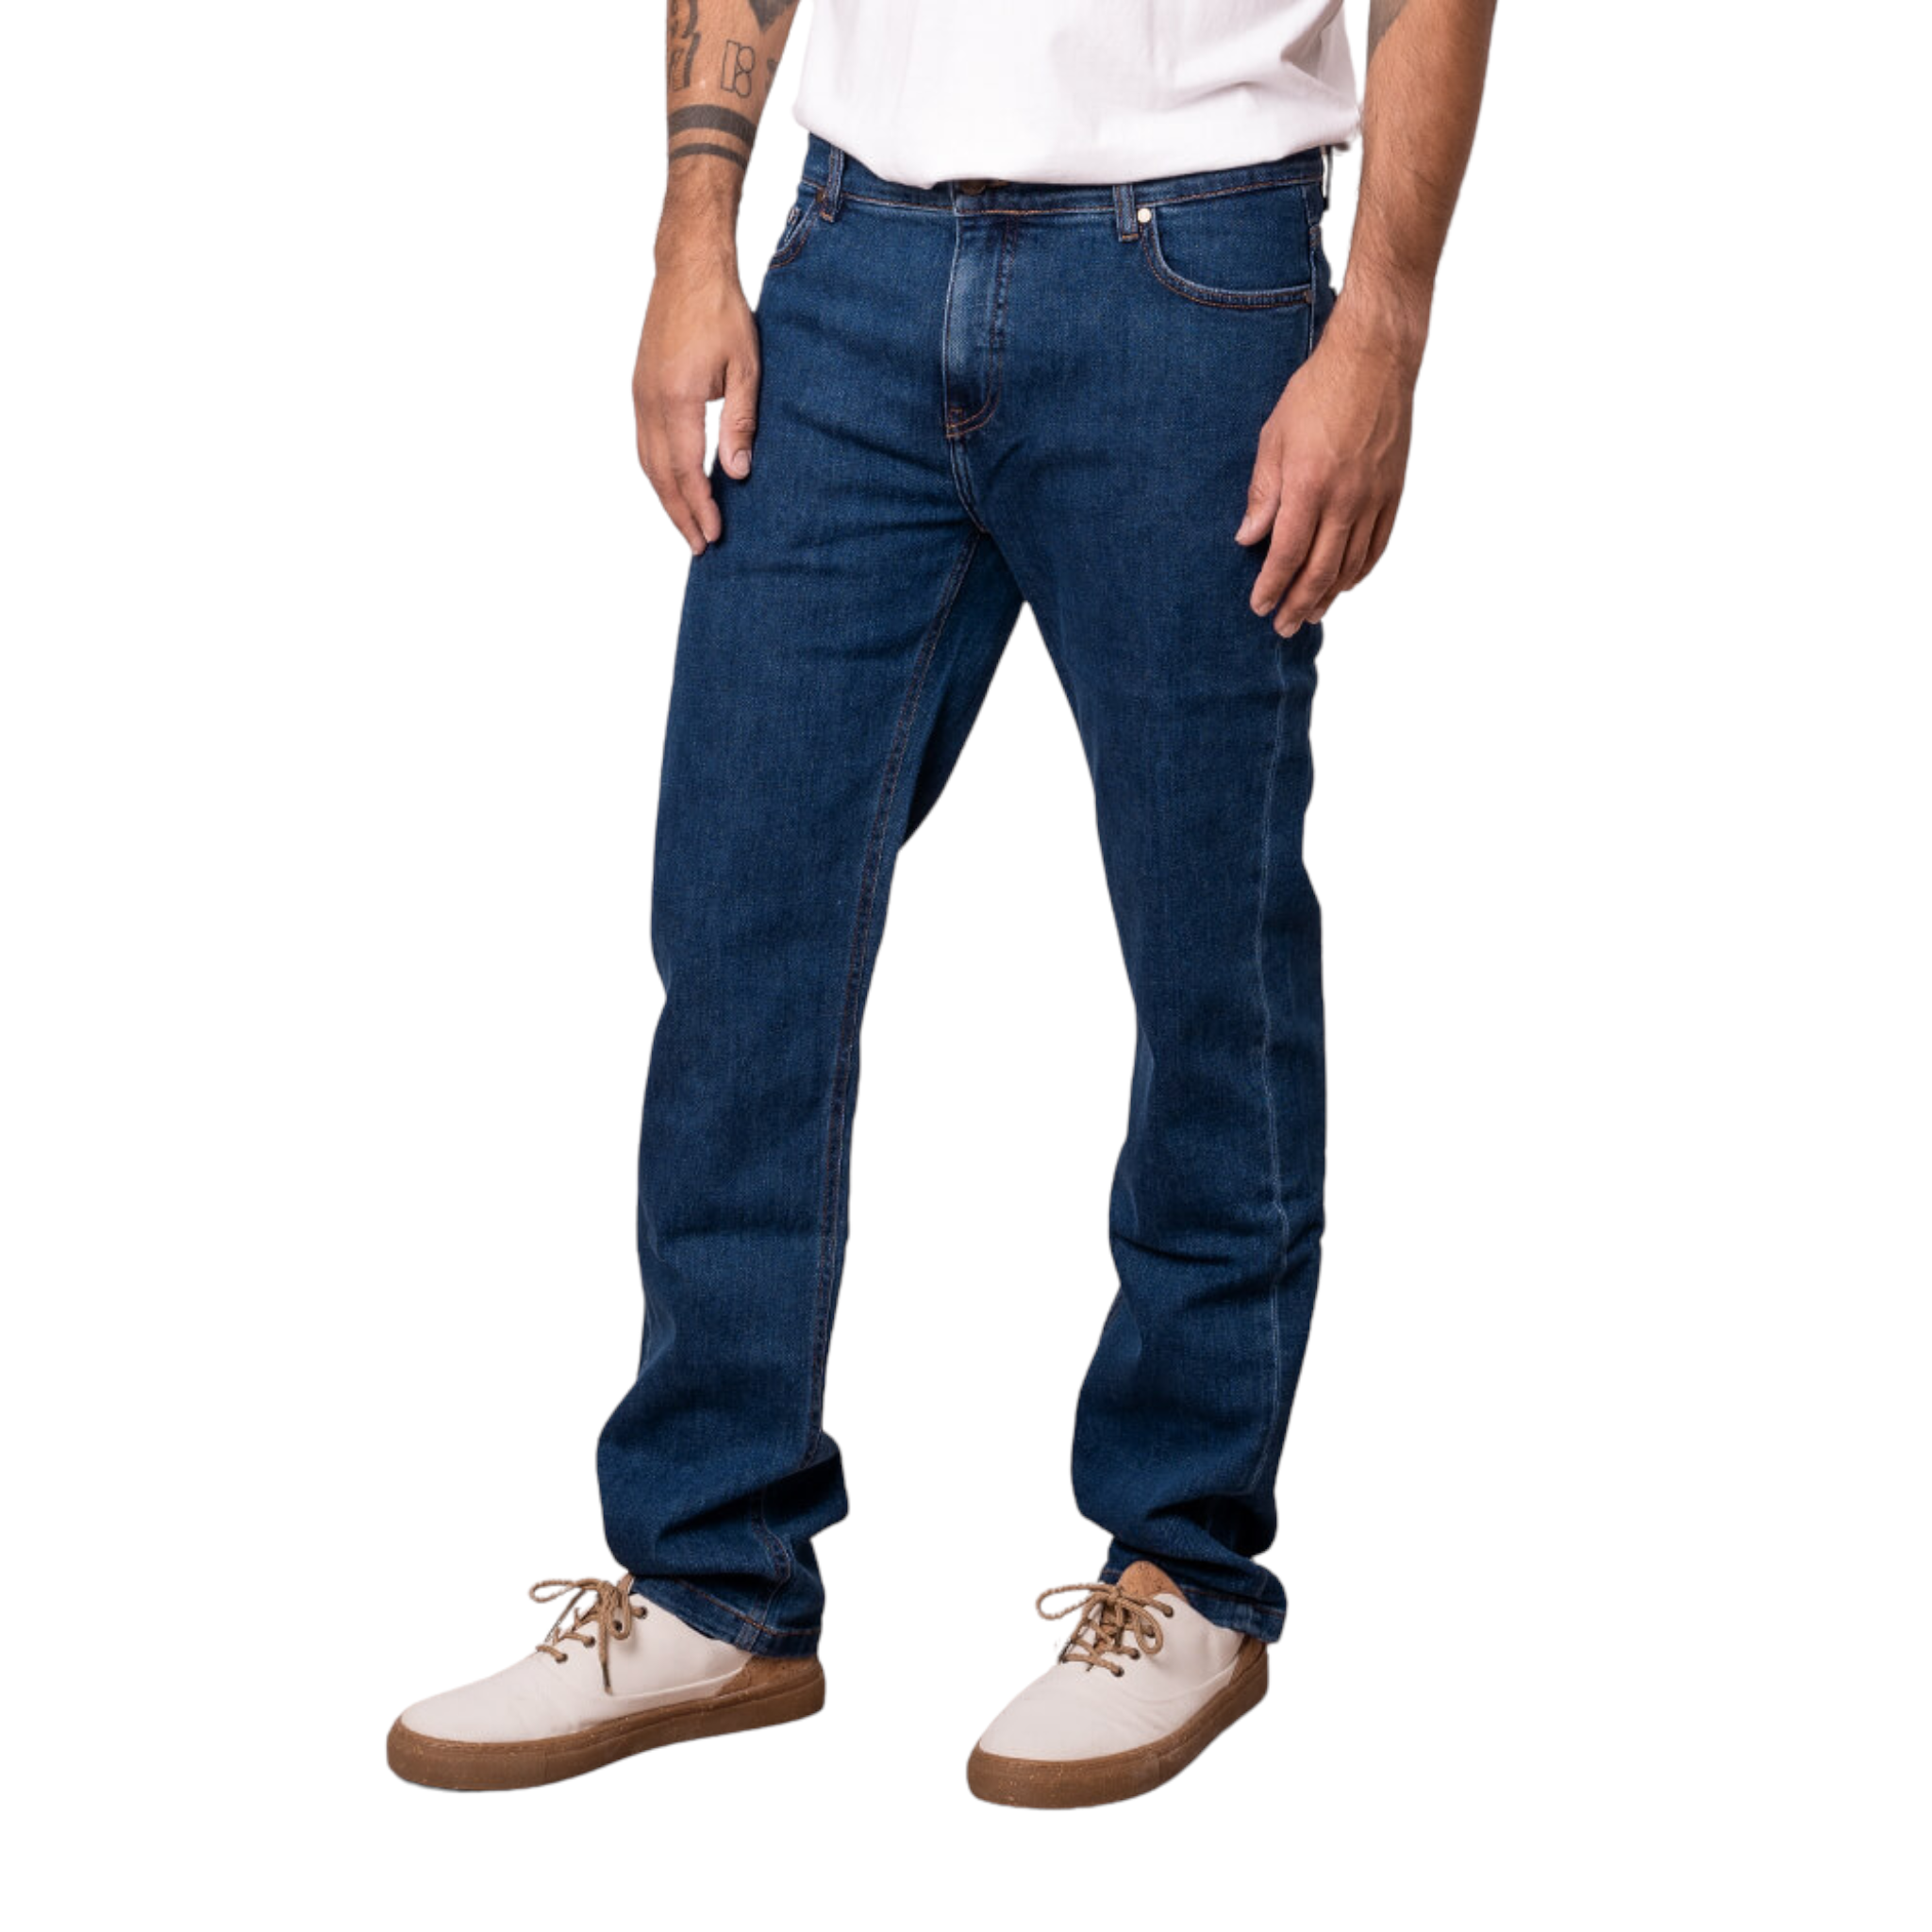 bleed clothing Herren Functional Jeans 2DA ROOTS